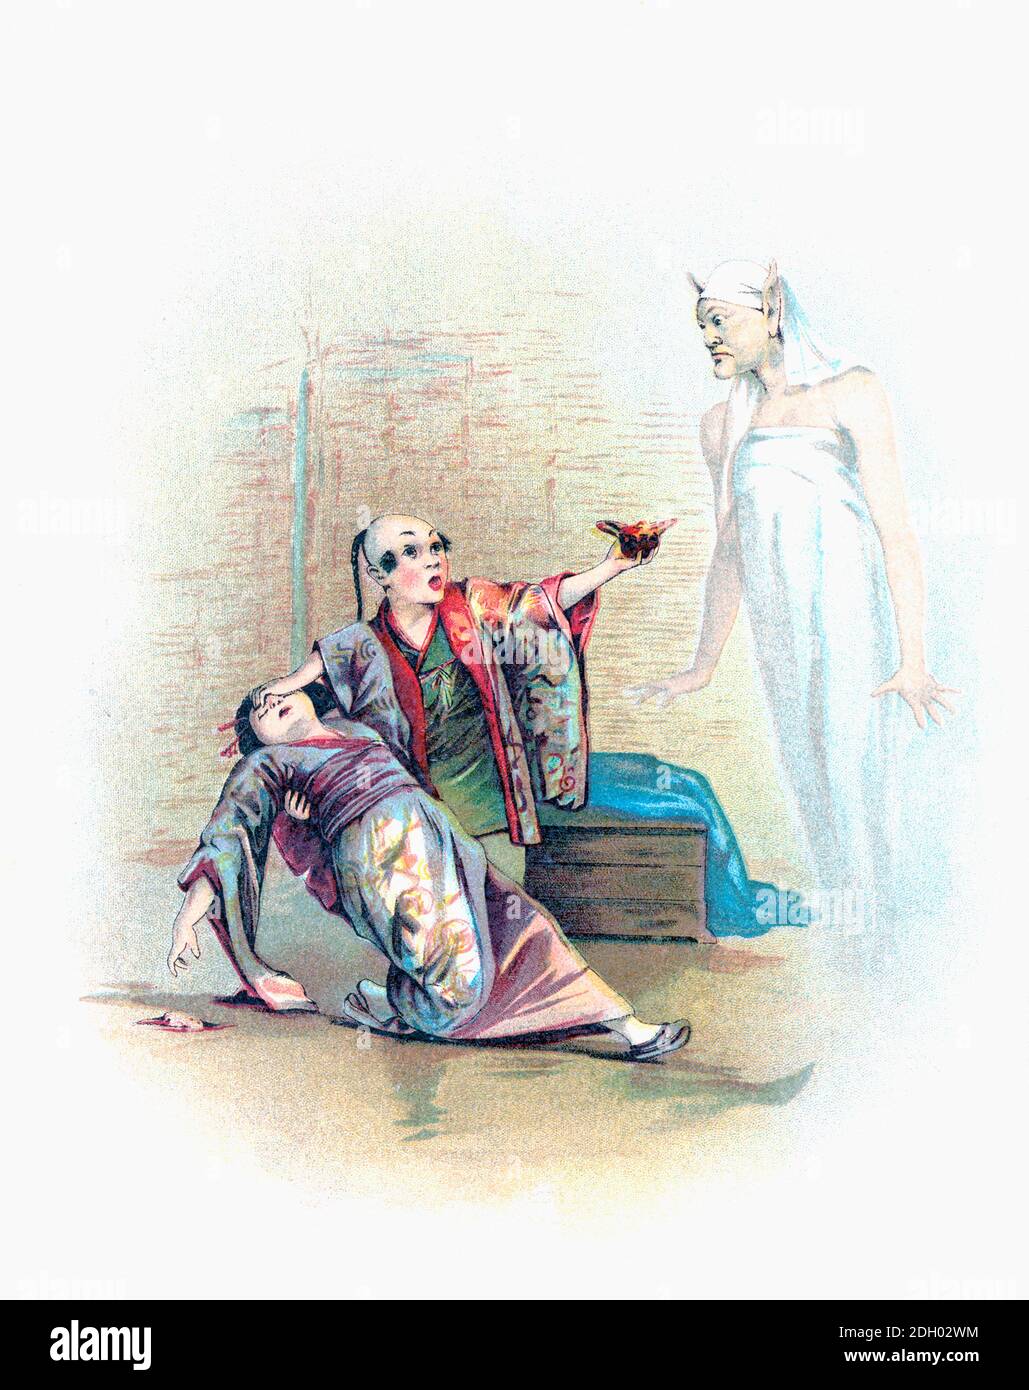 Der Genie taucht aus Aladdins magischer Lampe auf. Nach einer Illustration von Francis Brundage in einer Ausgabe der Arabian Nights Entertainments von 1898. Stockfoto